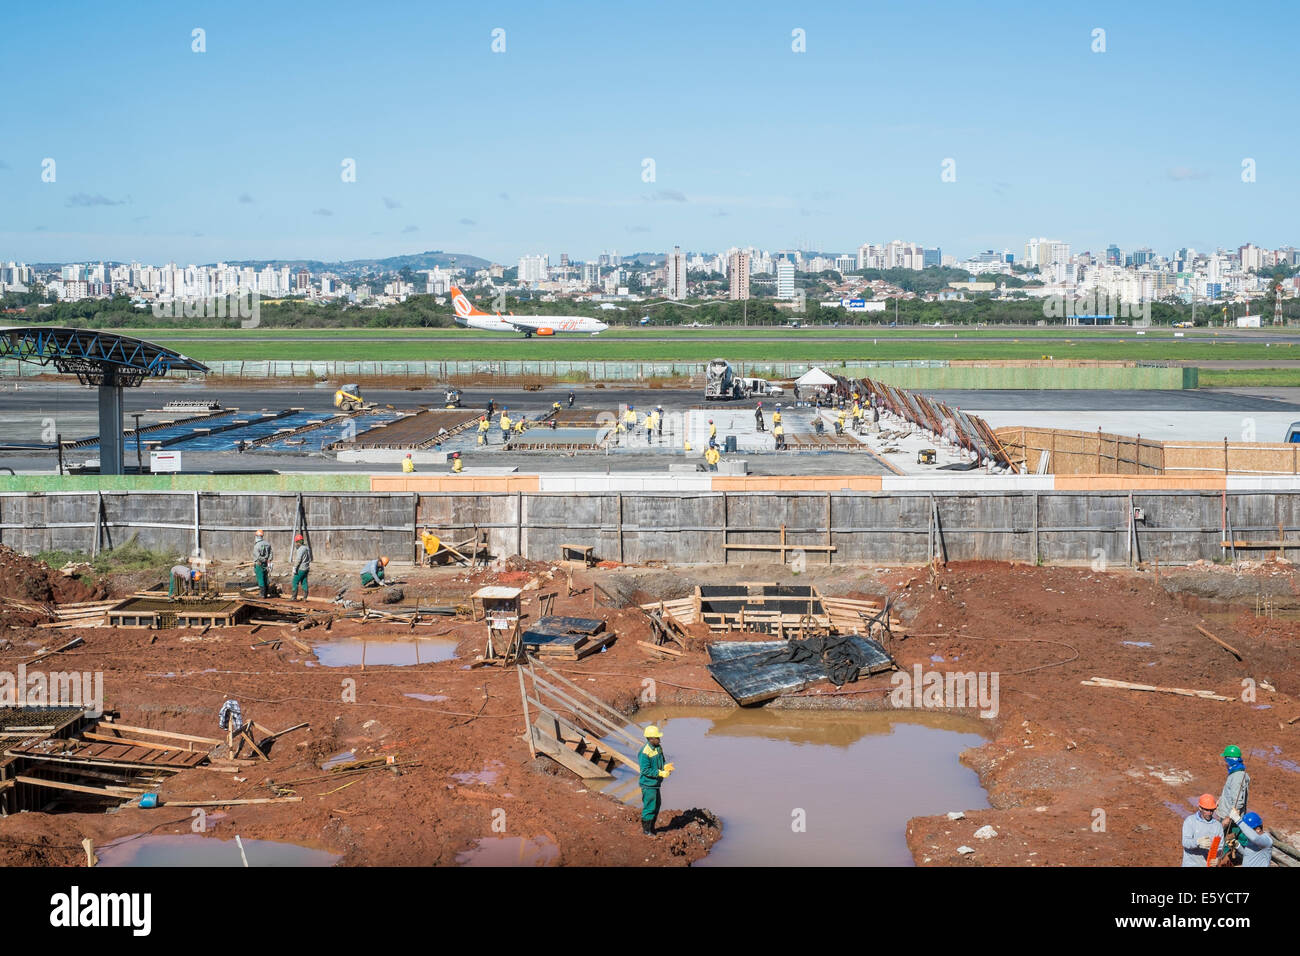 PORTO ALEGRE, Brasilien - 25 Juli: Eine brasilianische Flugzeug landet neben Salgado Filhos Flughafen Erweiterungsarbeiten. Die Erweiterung wurde in Stockfoto